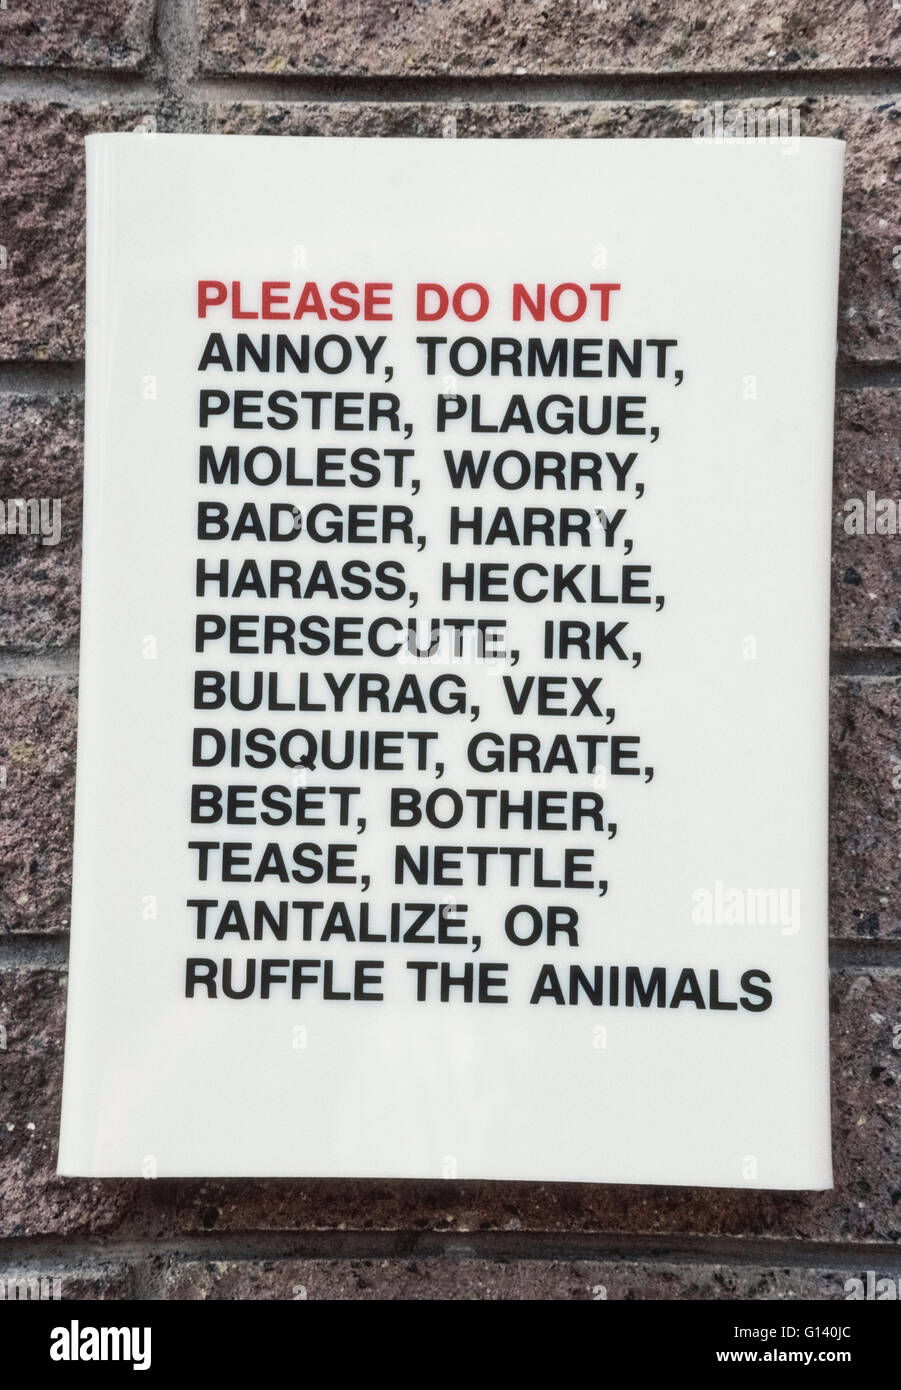 Eine einfachen, aber faszinierende Zeichen mit einer umfangreichen Liste von Wörtern fragt Besucher nicht zu misshandeln die Tiere an der weltberühmten San Diego Zoo in San Diego, Kalifornien, USA. Er bittet höflich Zoogoers nicht zu ärgern, quälen, belästigen, Plagen, belästigen, sorgen, Dachs, harry, belästigen, Zange, verfolgen, ärgern, bullyrag, vex, Unruhe, reiben, best, stören, necken, Brennnessel, quälen oder Rüschen mehr als 3.500 seltene und gefährdete Tiere, die dort leben. Stockfoto